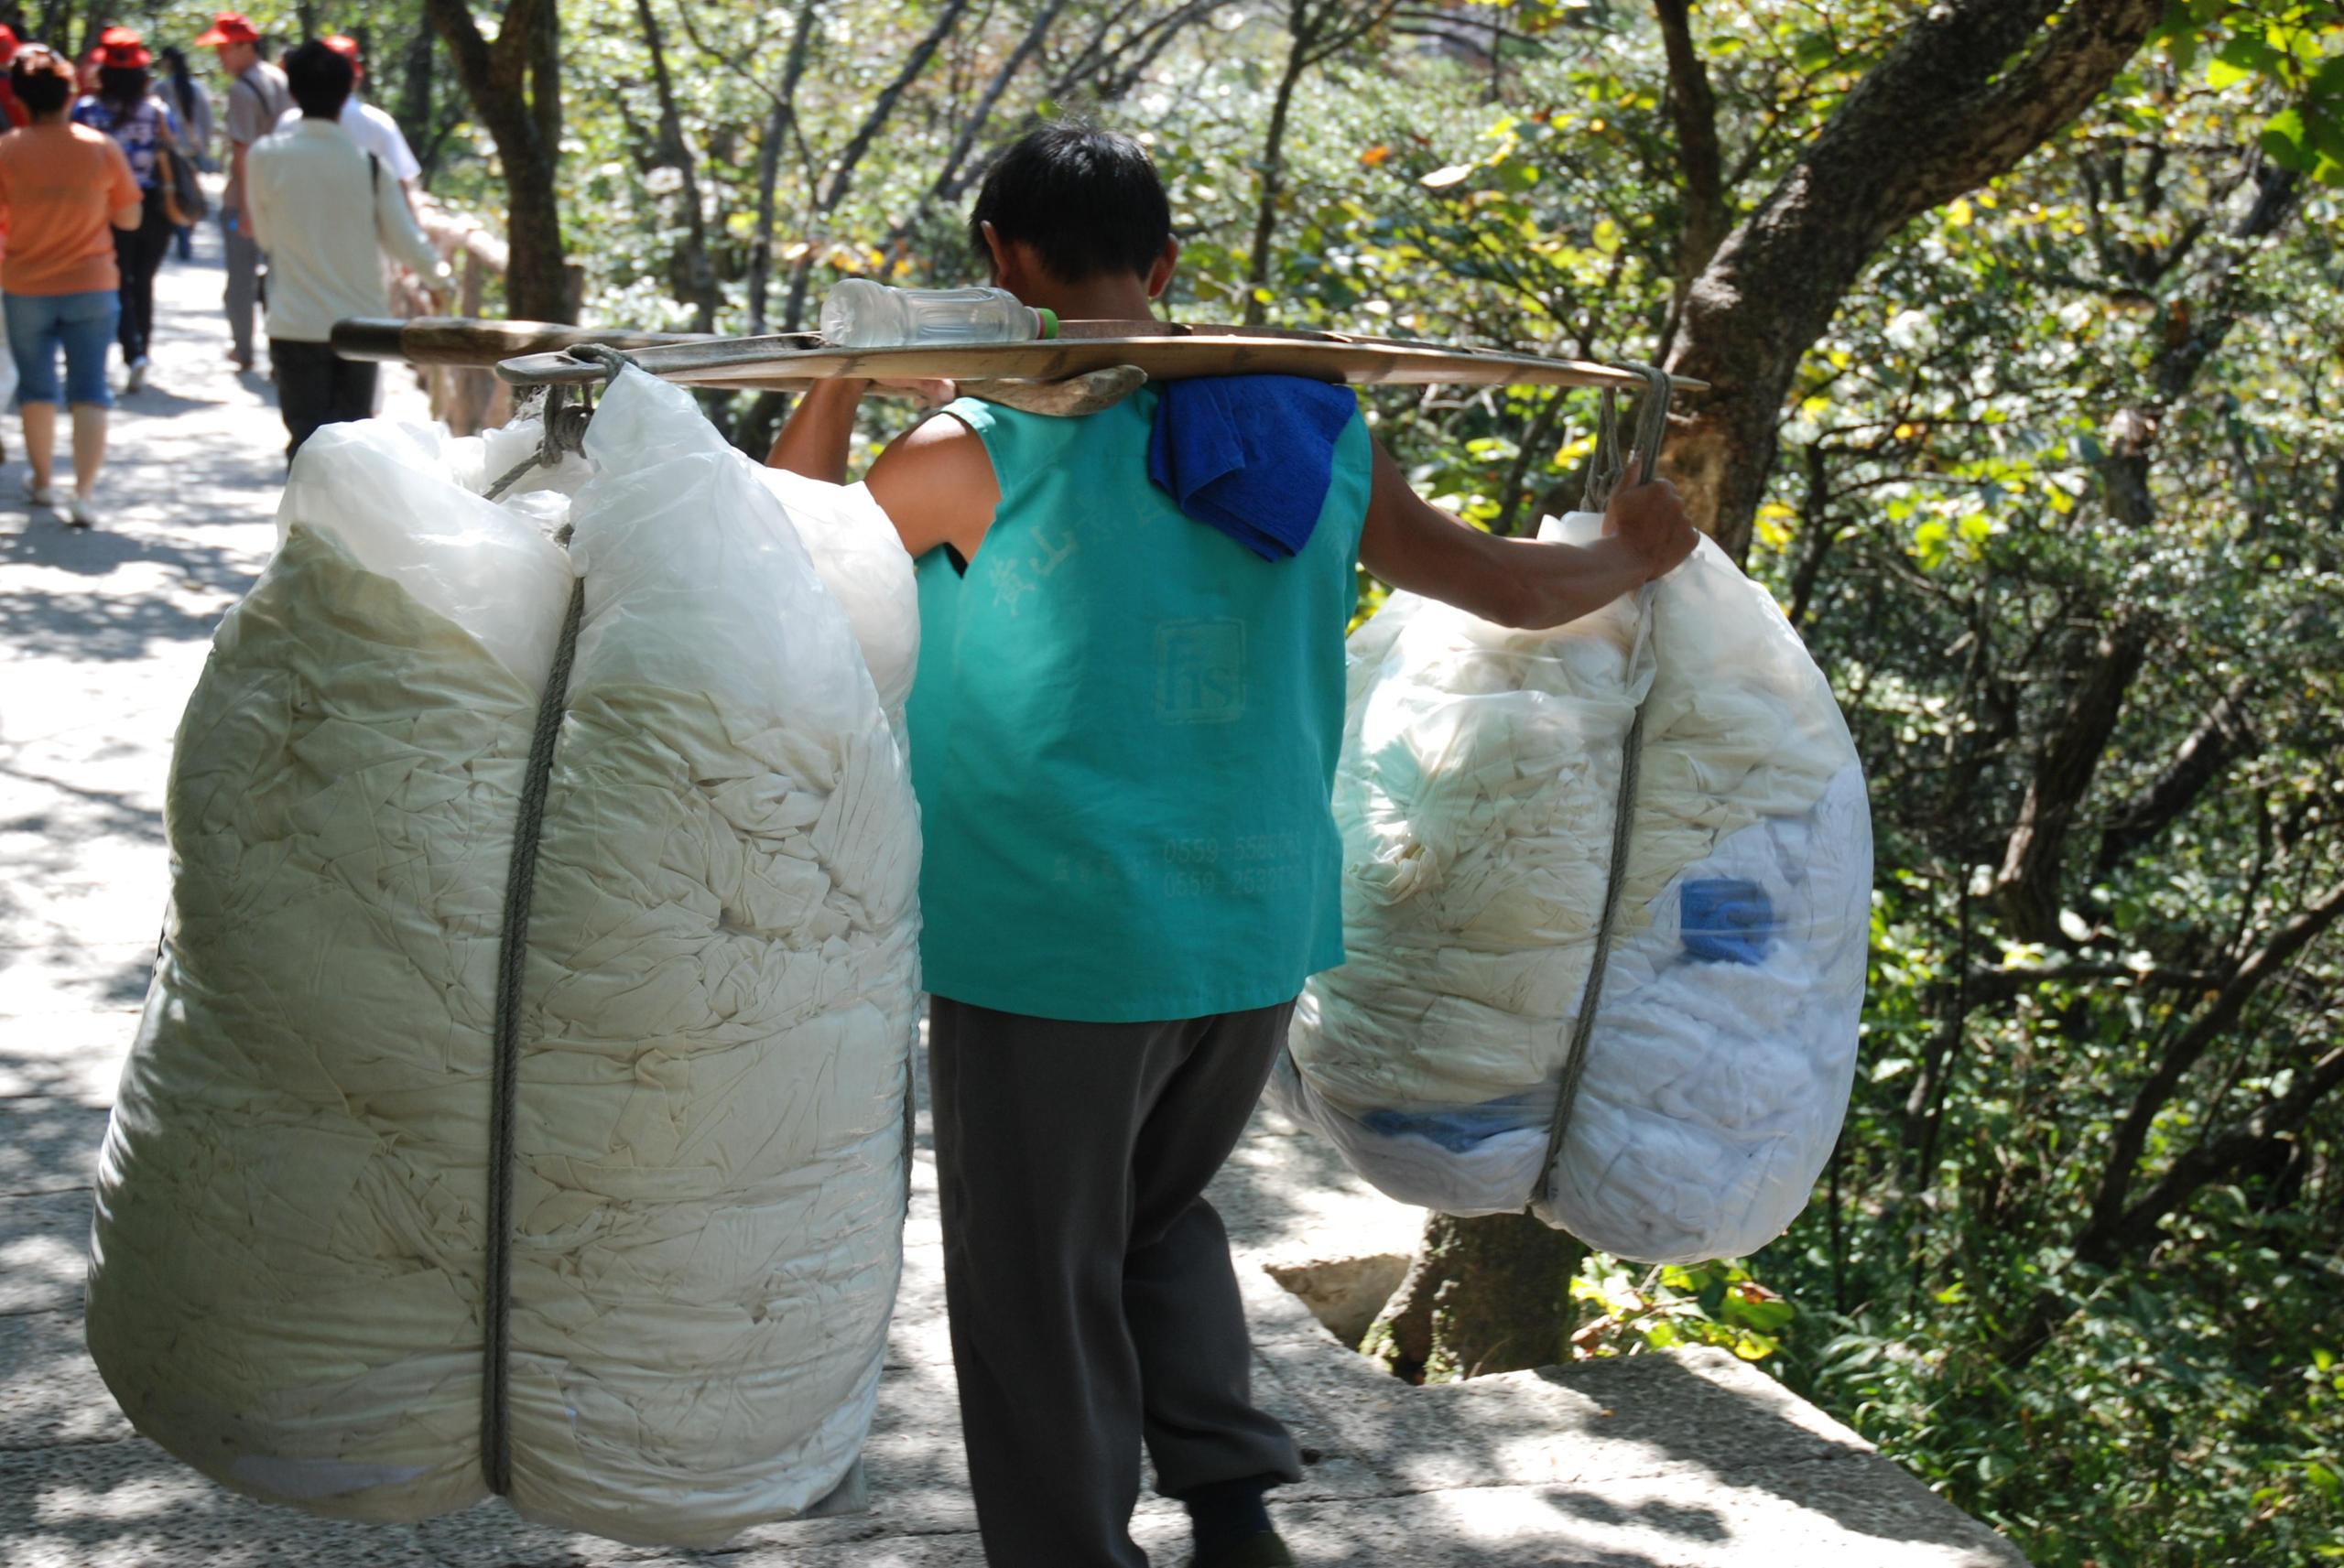 中國是世界上最大的棉花供應國。除了圖片中的安徽，出產棉花的省份還有新疆，據稱那裡有強迫勞動問題。